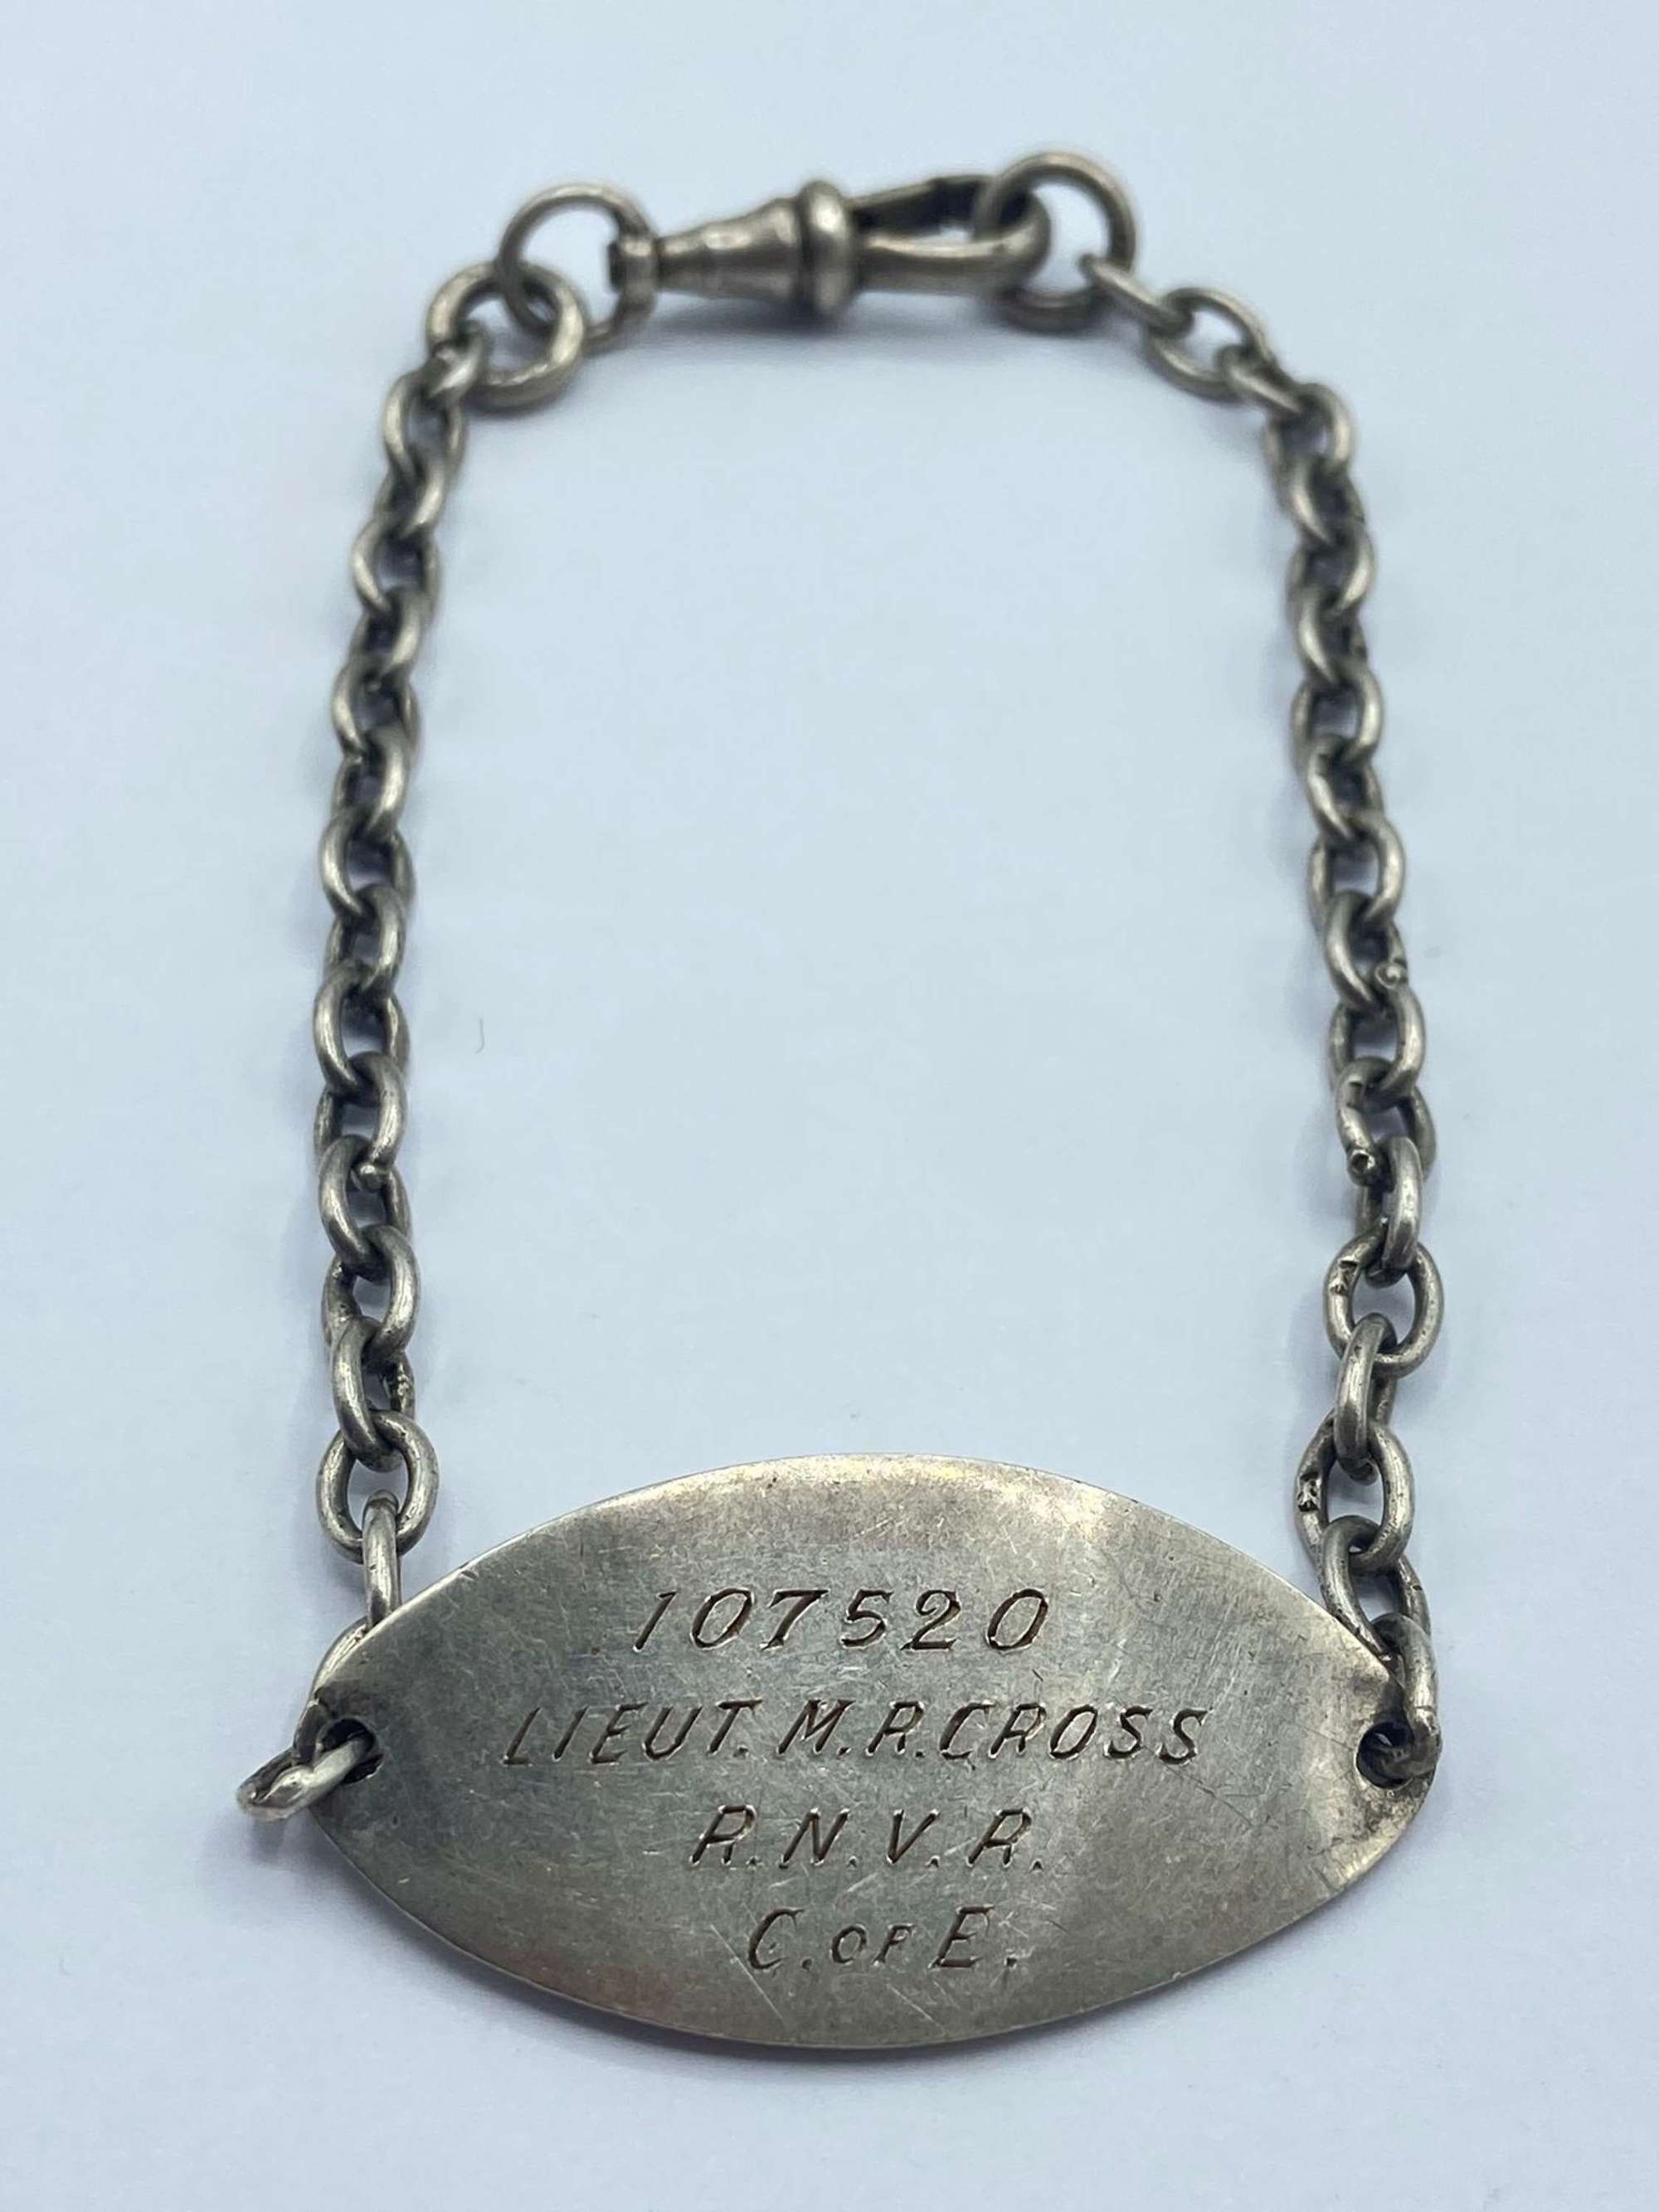 WW2 Royal Navy Silver Hallmarked Identity Bracelet Lieut Cross RNVR